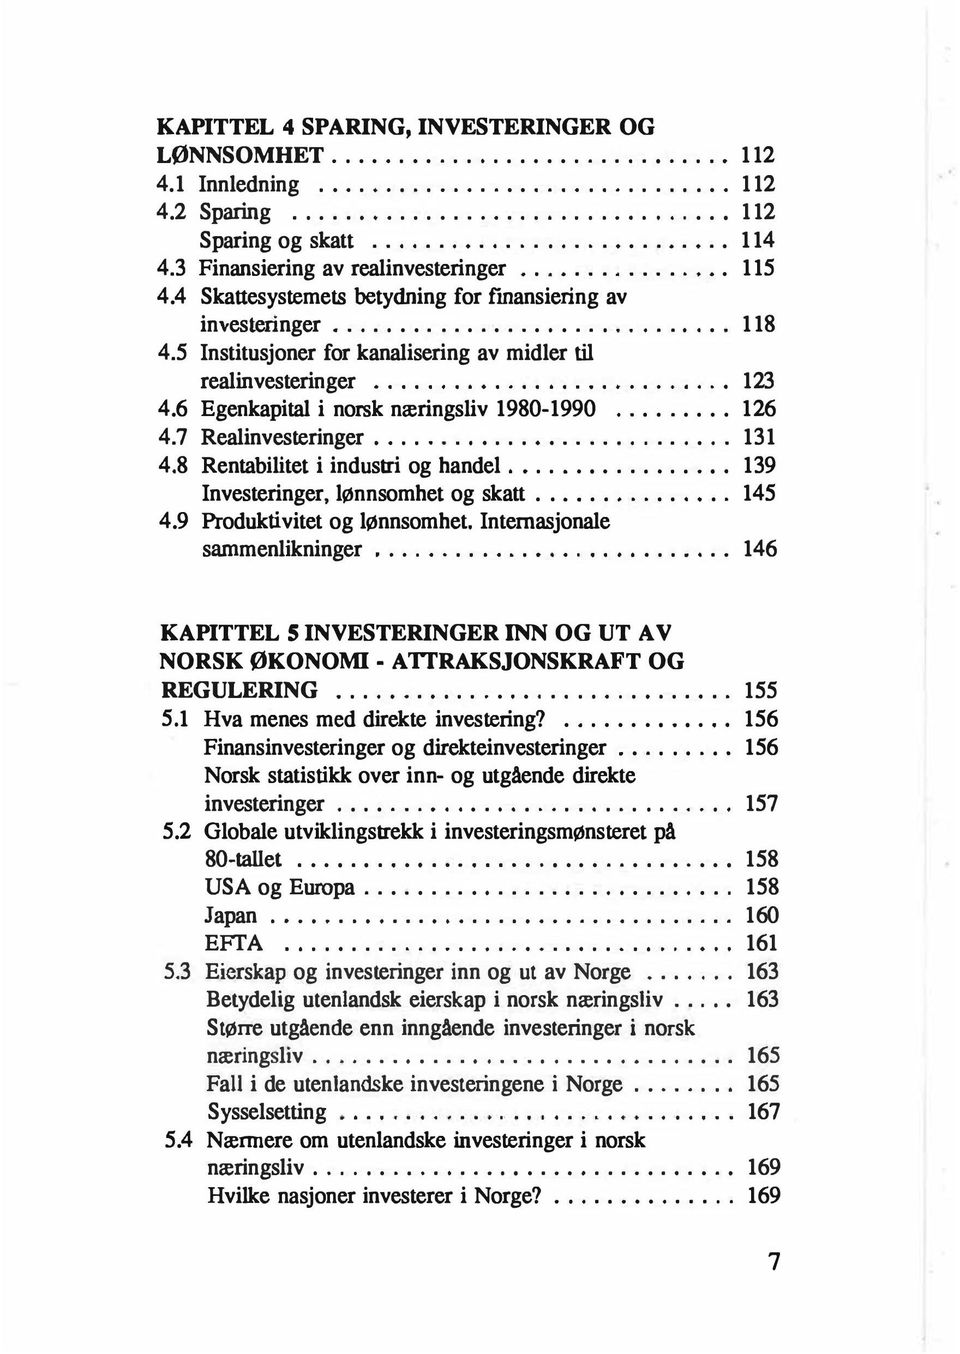 5 Institusjoner for kanalisering av midler til real investeringer.......................... 123 4. 6 Egenkapital i norsk næringsliv 1980-1990... 126 4. 7 Realinvesteringer................... 131 4.